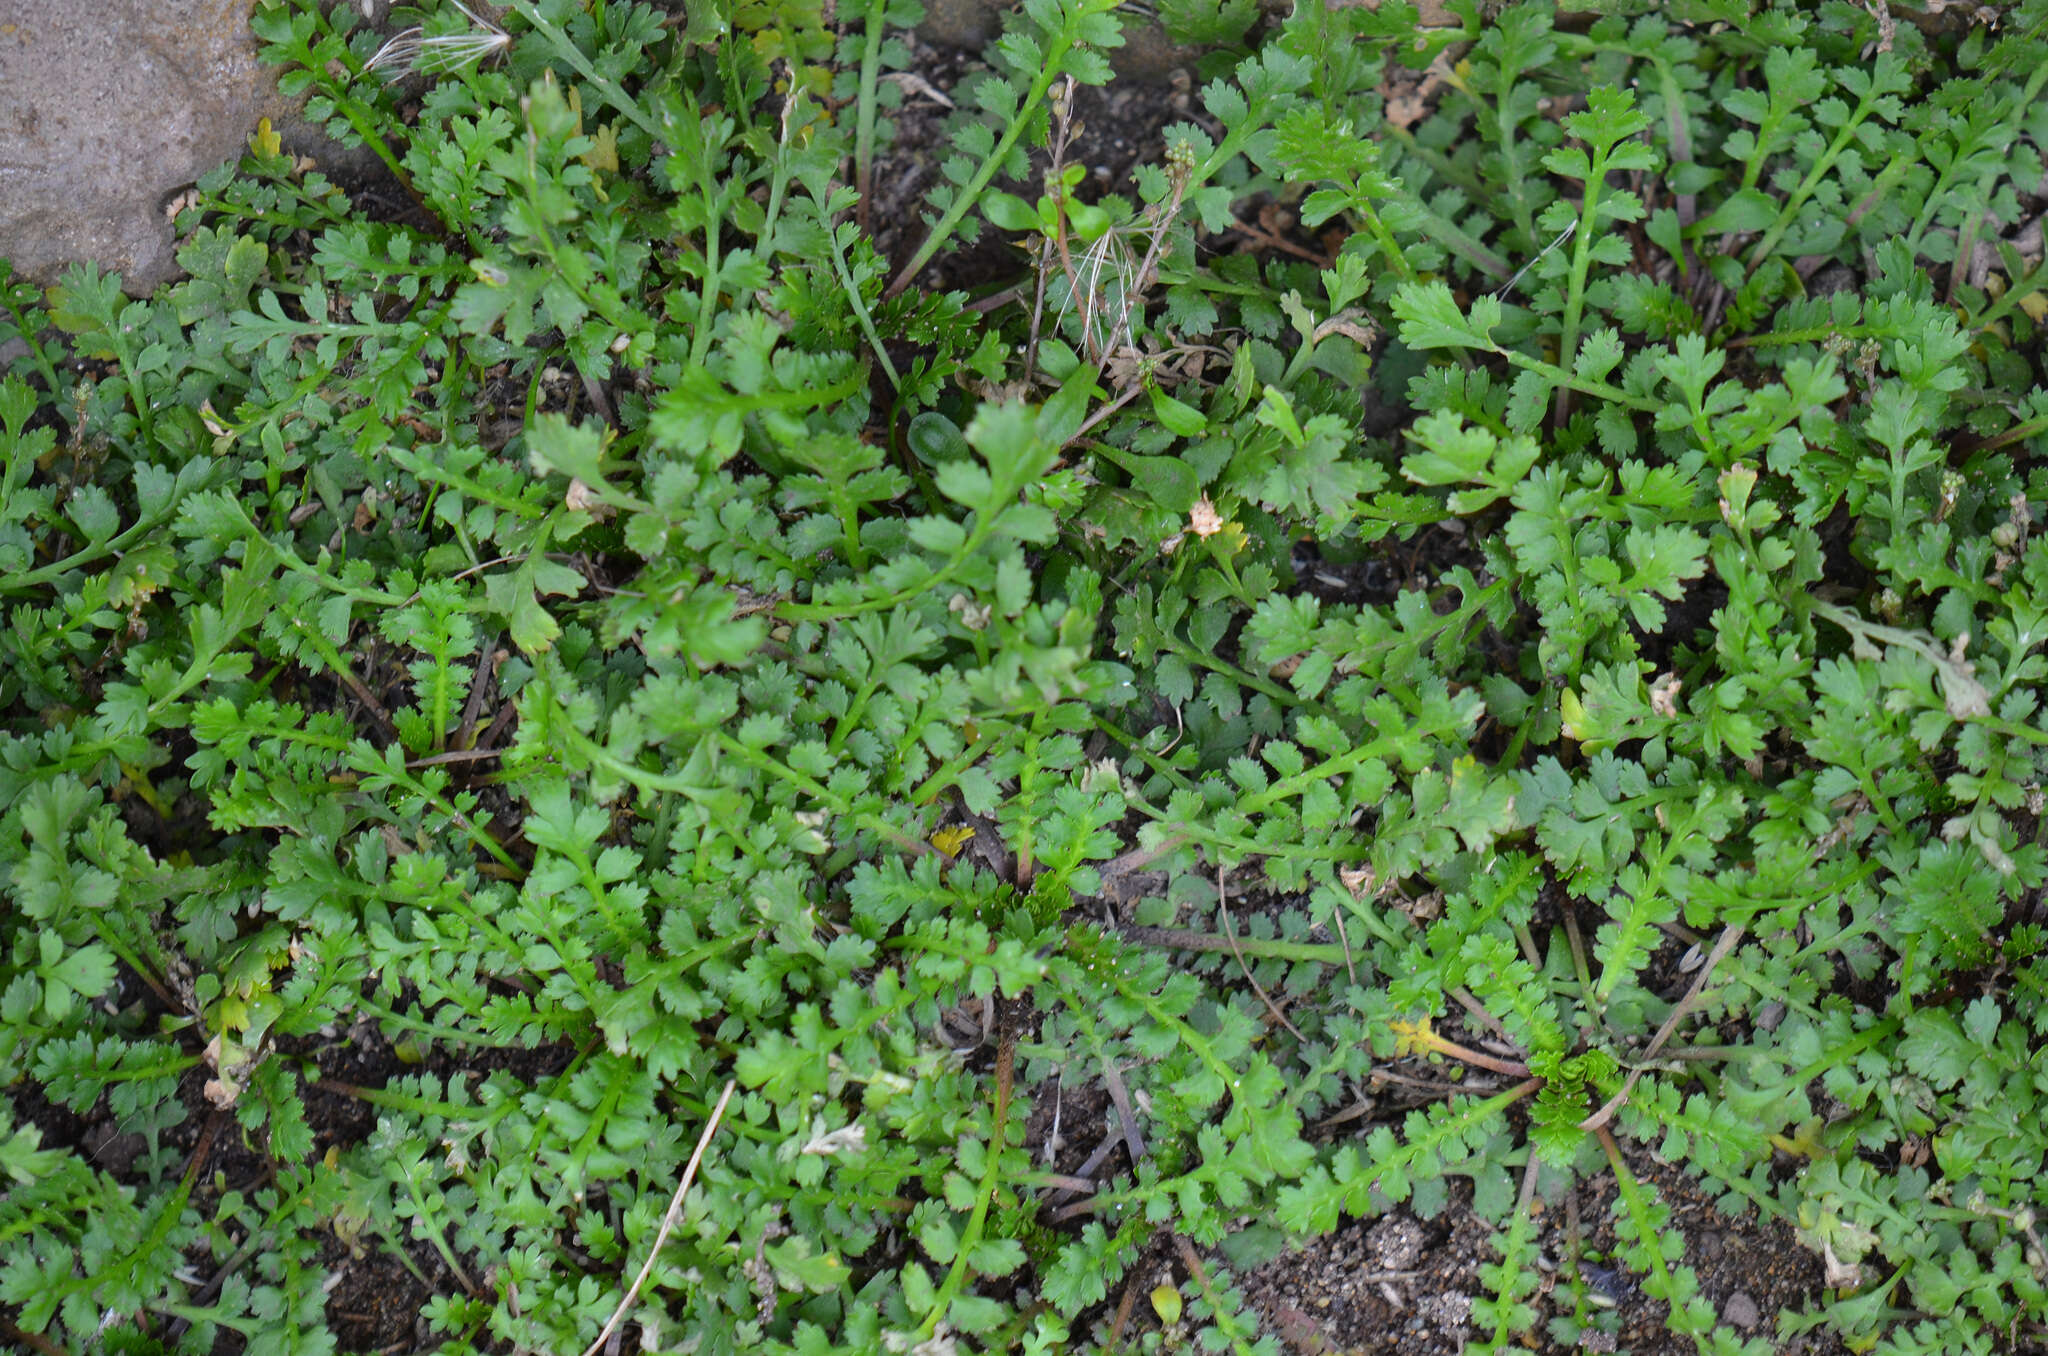 Image of Lepidium tenuicaule Kirk